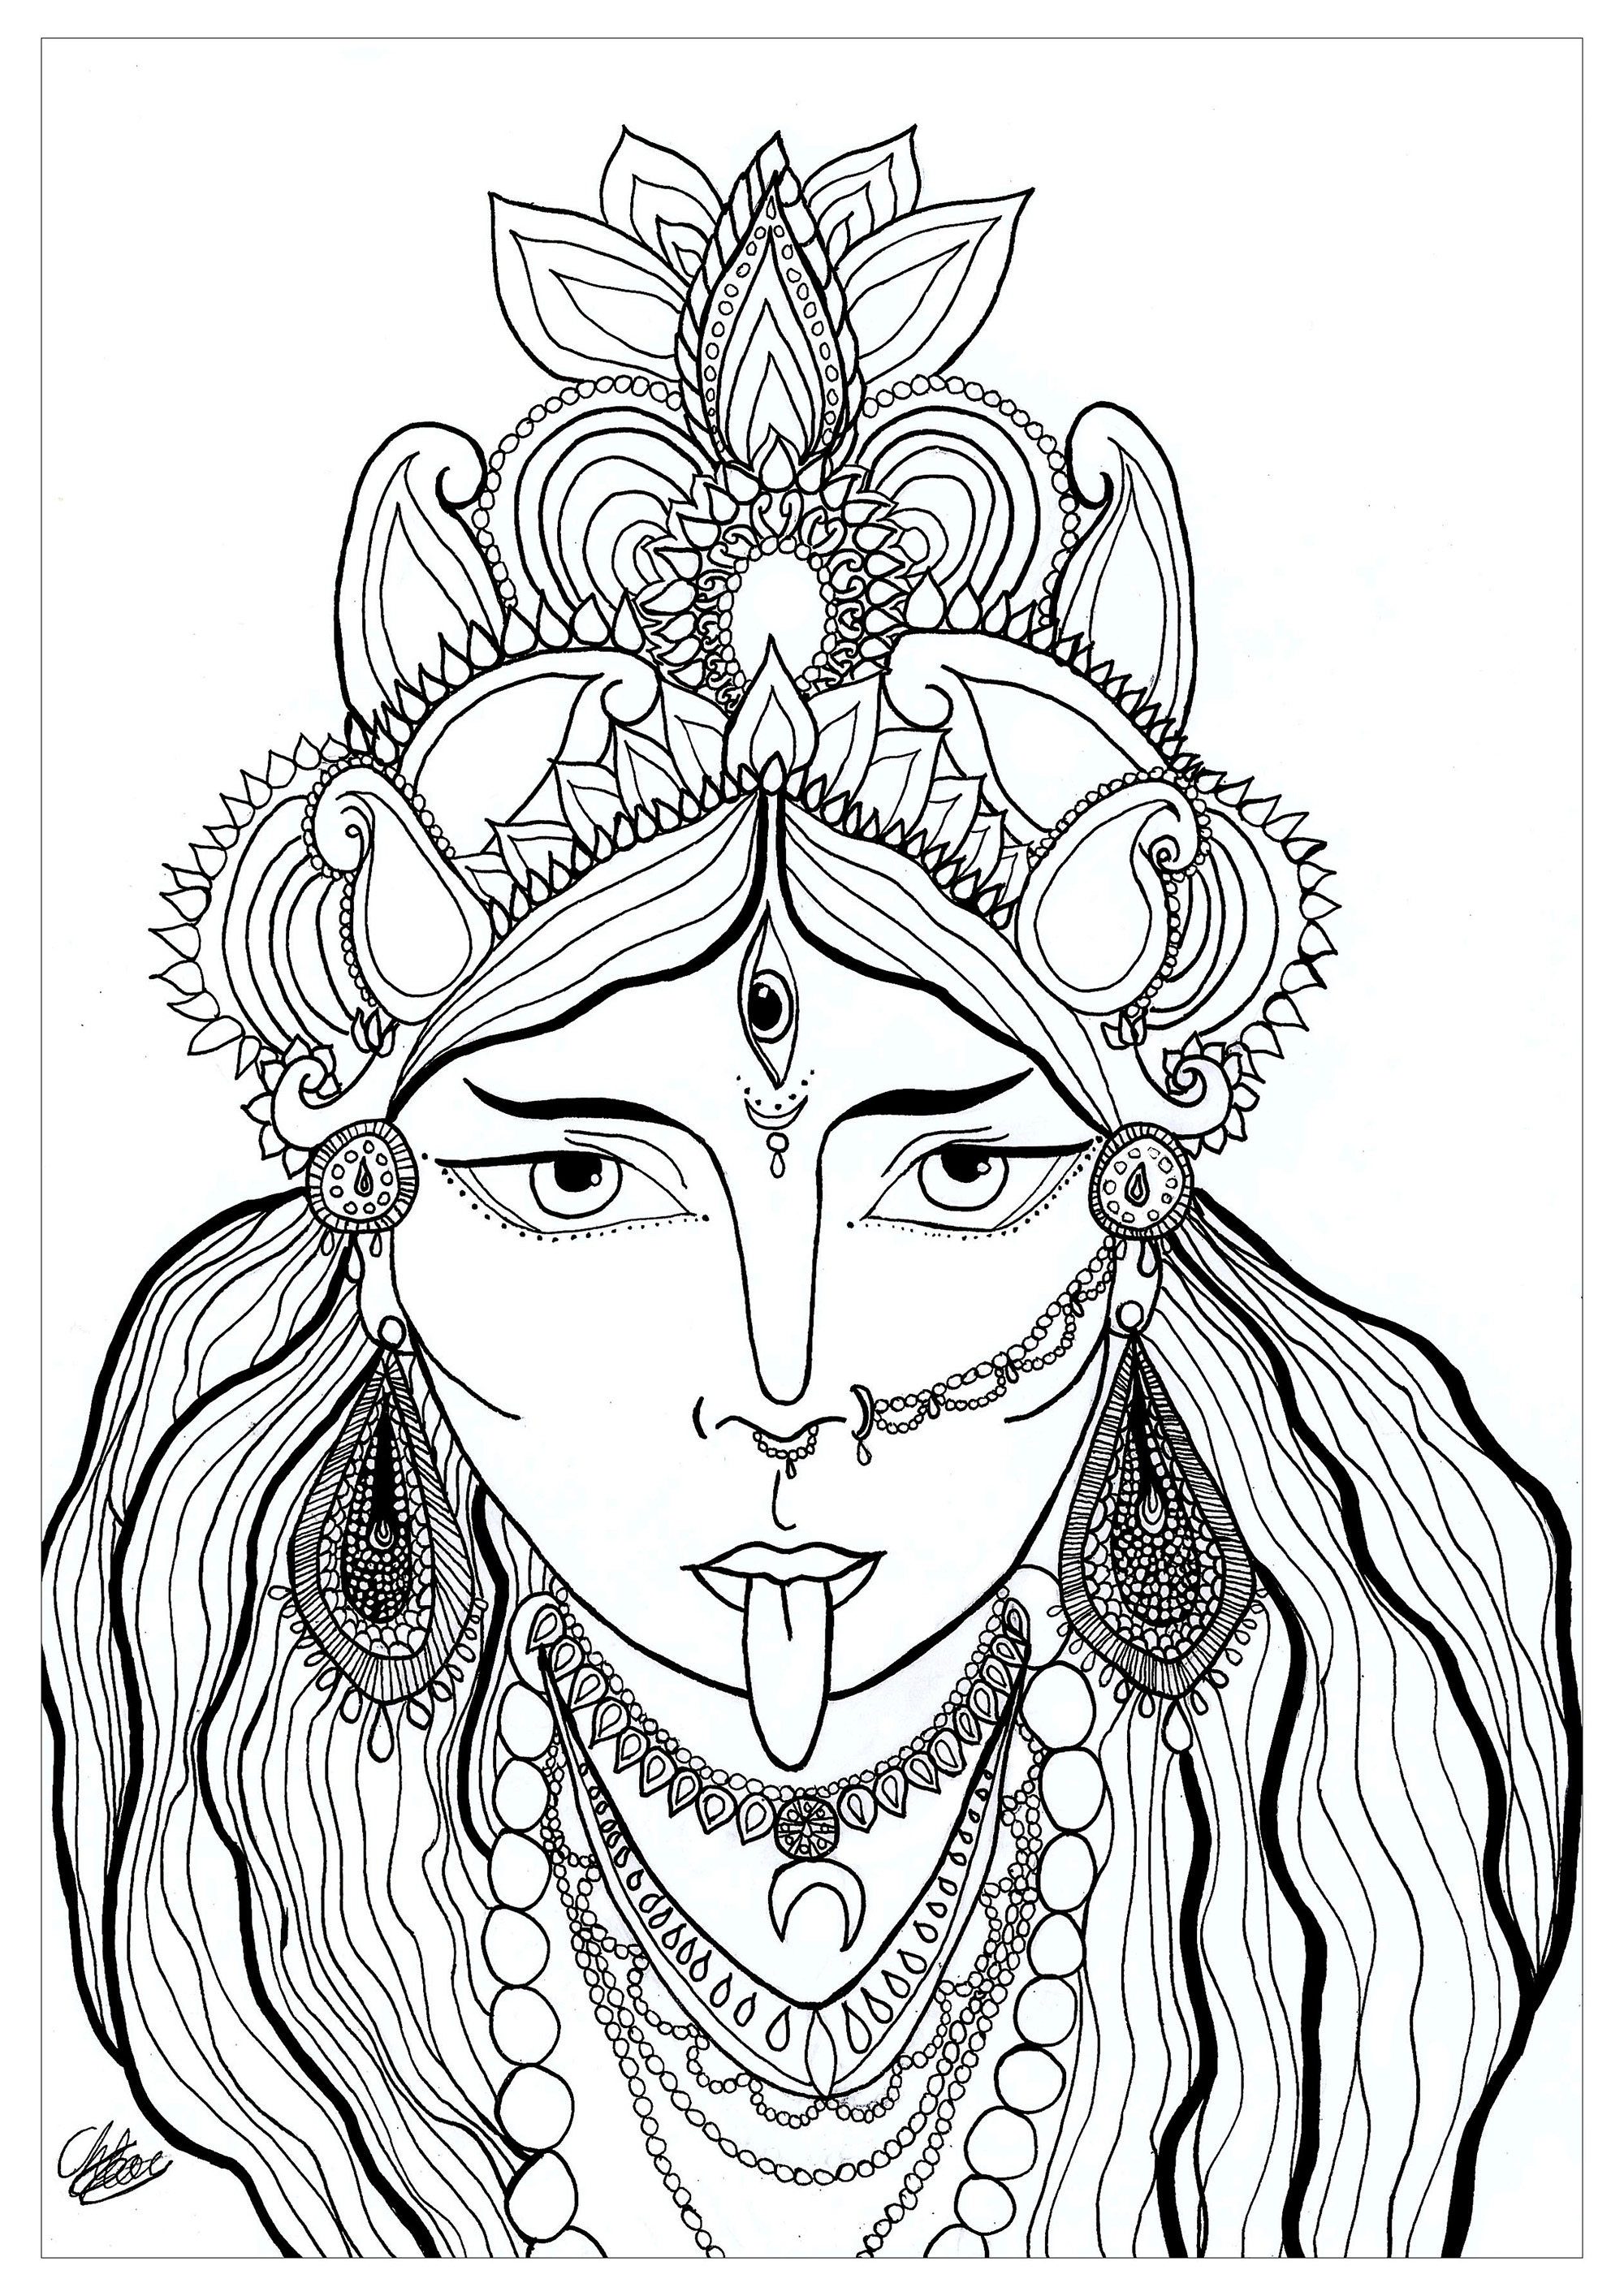 Coloring page of the goddess Kali. Kali est une déesse hindoue vénérée en tant que manifestation de la Shakti, la puissance féminine créatrice. Représentée avec une apparence terrifiante, elle symbolise le temps, la destruction du mal et la transformation, jouant un rôle majeur dans la tradition hindoue.